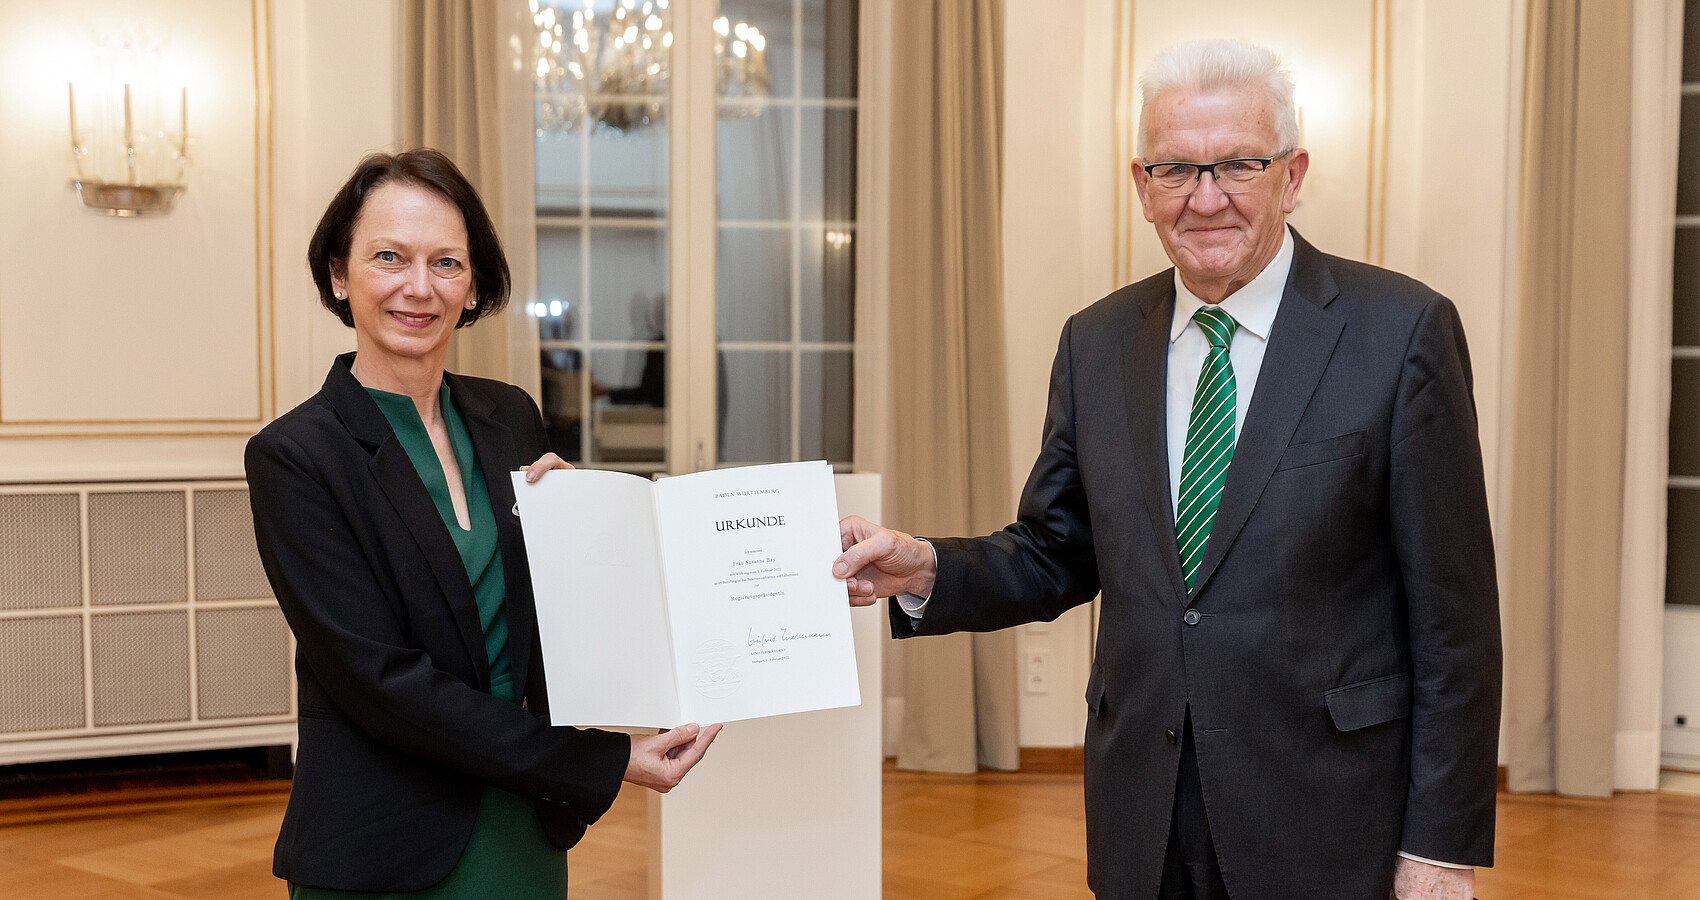 Urkundenübergabe an neue Stuttgarter Regierungspräsidentin